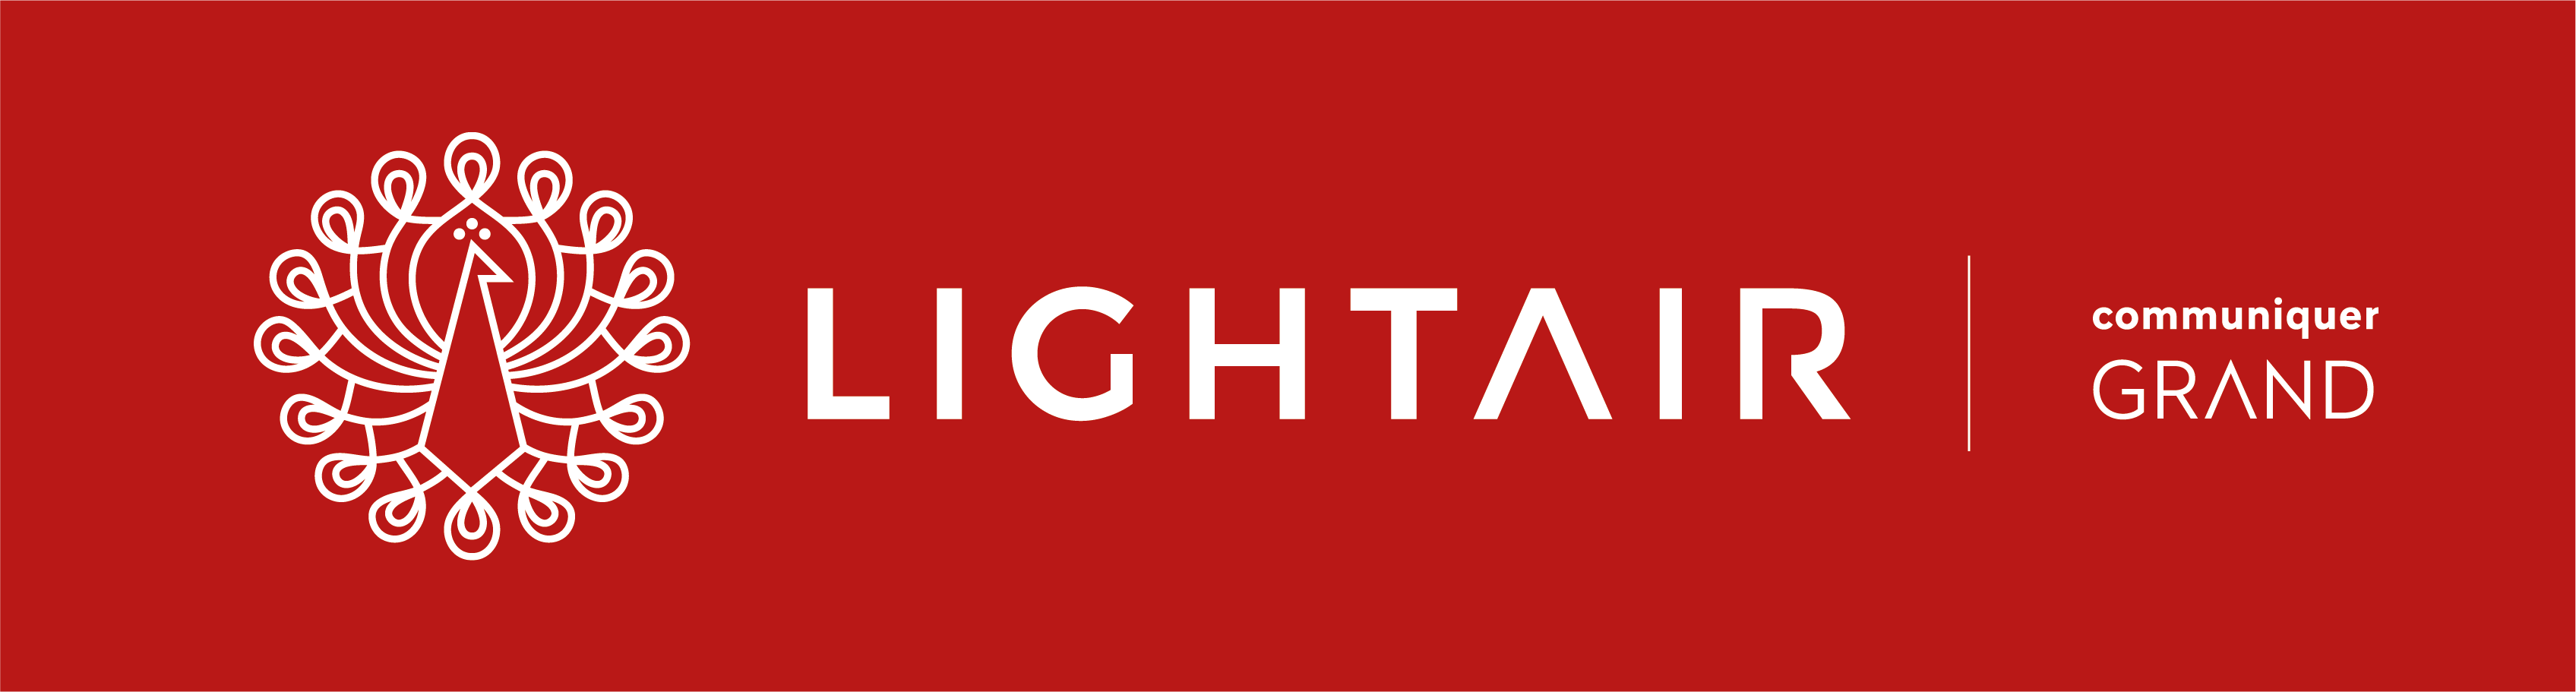 logo lightair